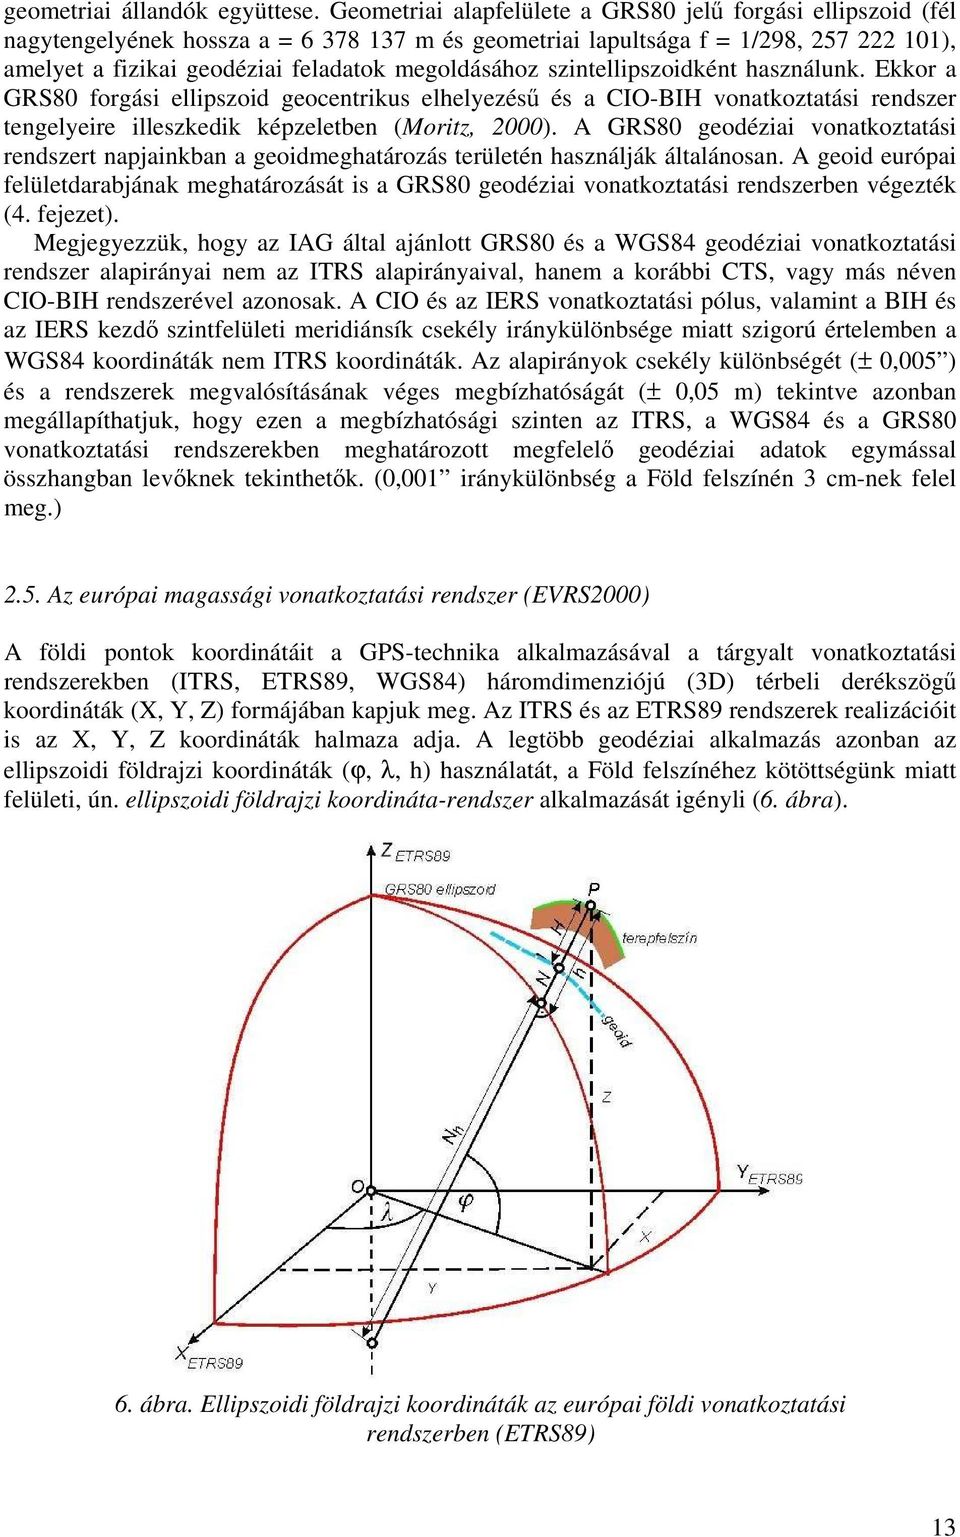 megoldásához szintellipszoidként használunk. Ekkor a GRS80 forgási ellipszoid geocentrikus elhelyezésű és a CIO-BIH vonatkoztatási rendszer tengelyeire illeszkedik képzeletben (Moritz, 2000).